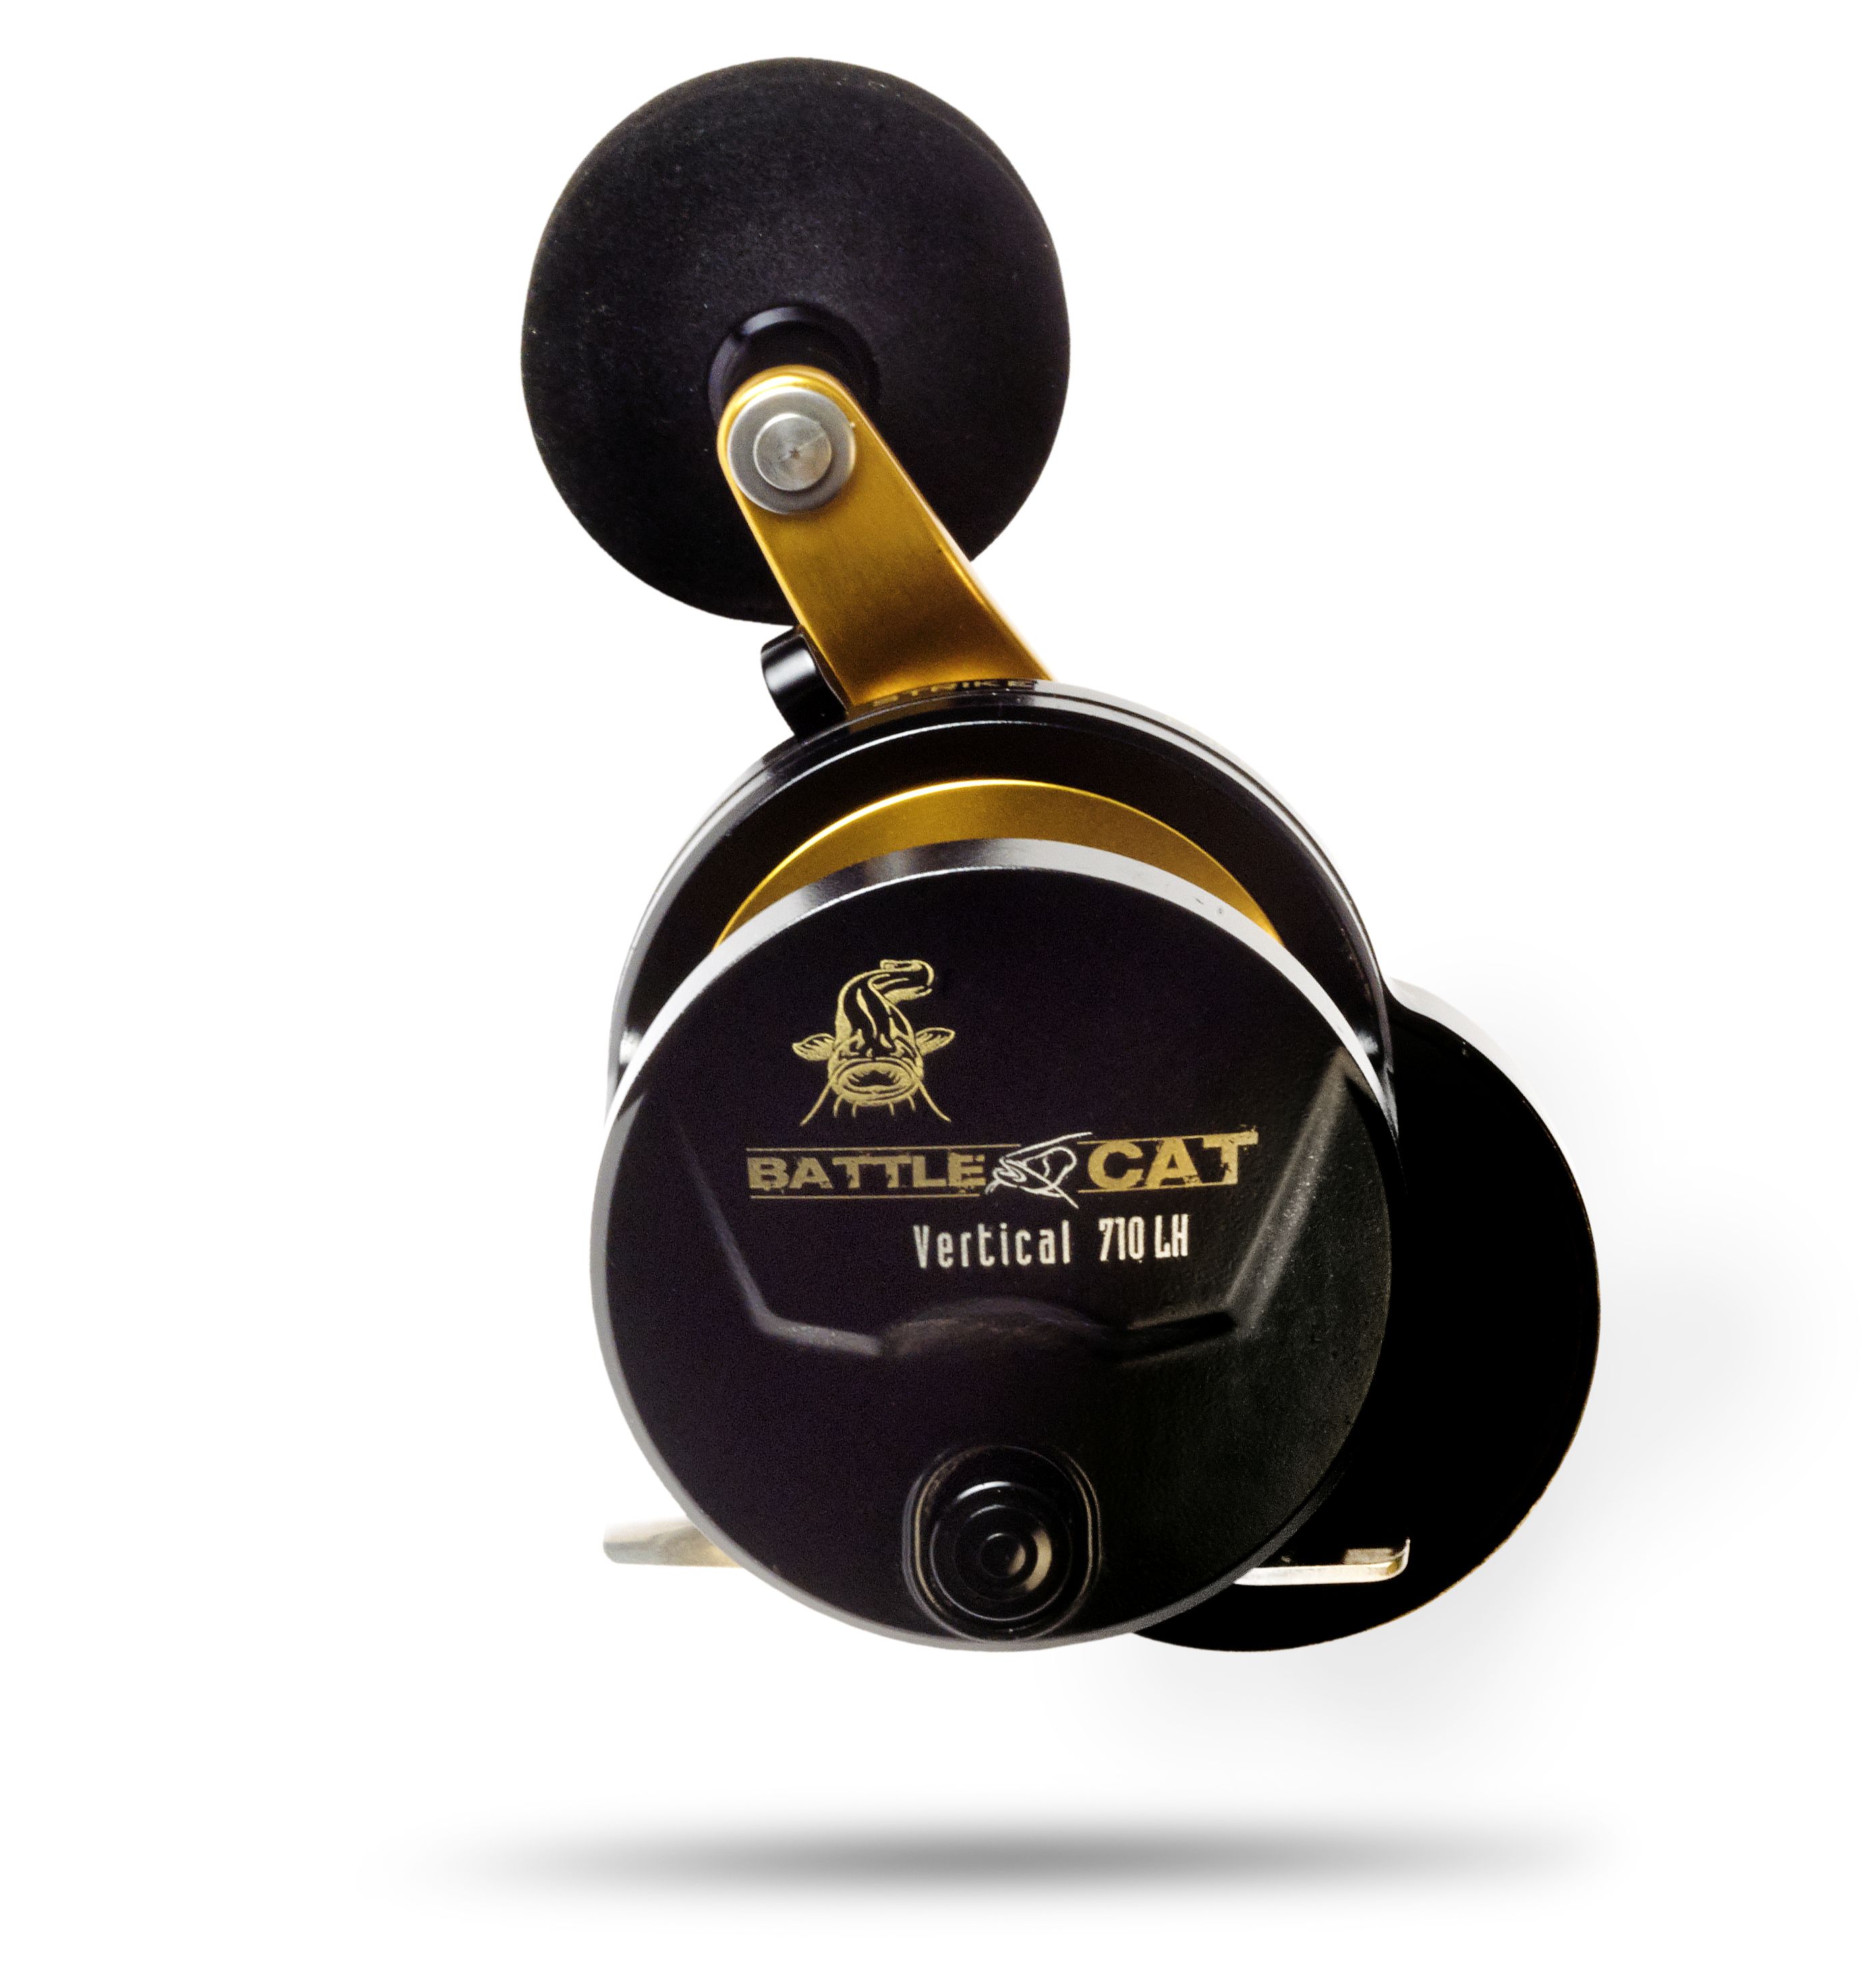 Black Cat Battle Cat Vertical Modell: 710 LH ·  Kugellager: 7 ·  345m/ 0,25mm · Bremskr. 15kg / 33lbs